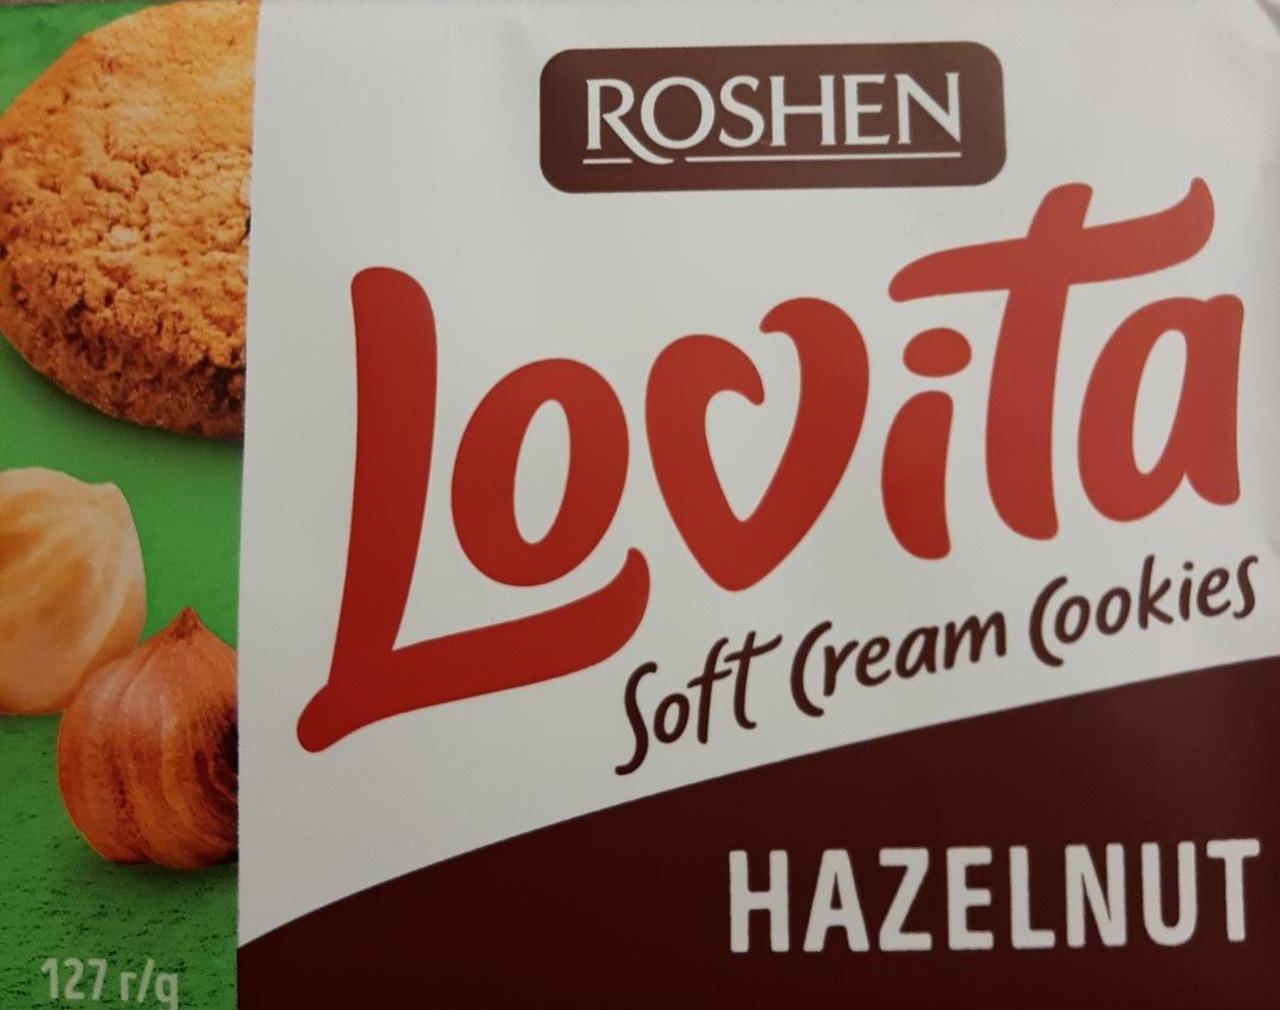 Фото - Печенье сдобное с ореховой начинкой Lovita Soft Cream Cookies фундук Roshen